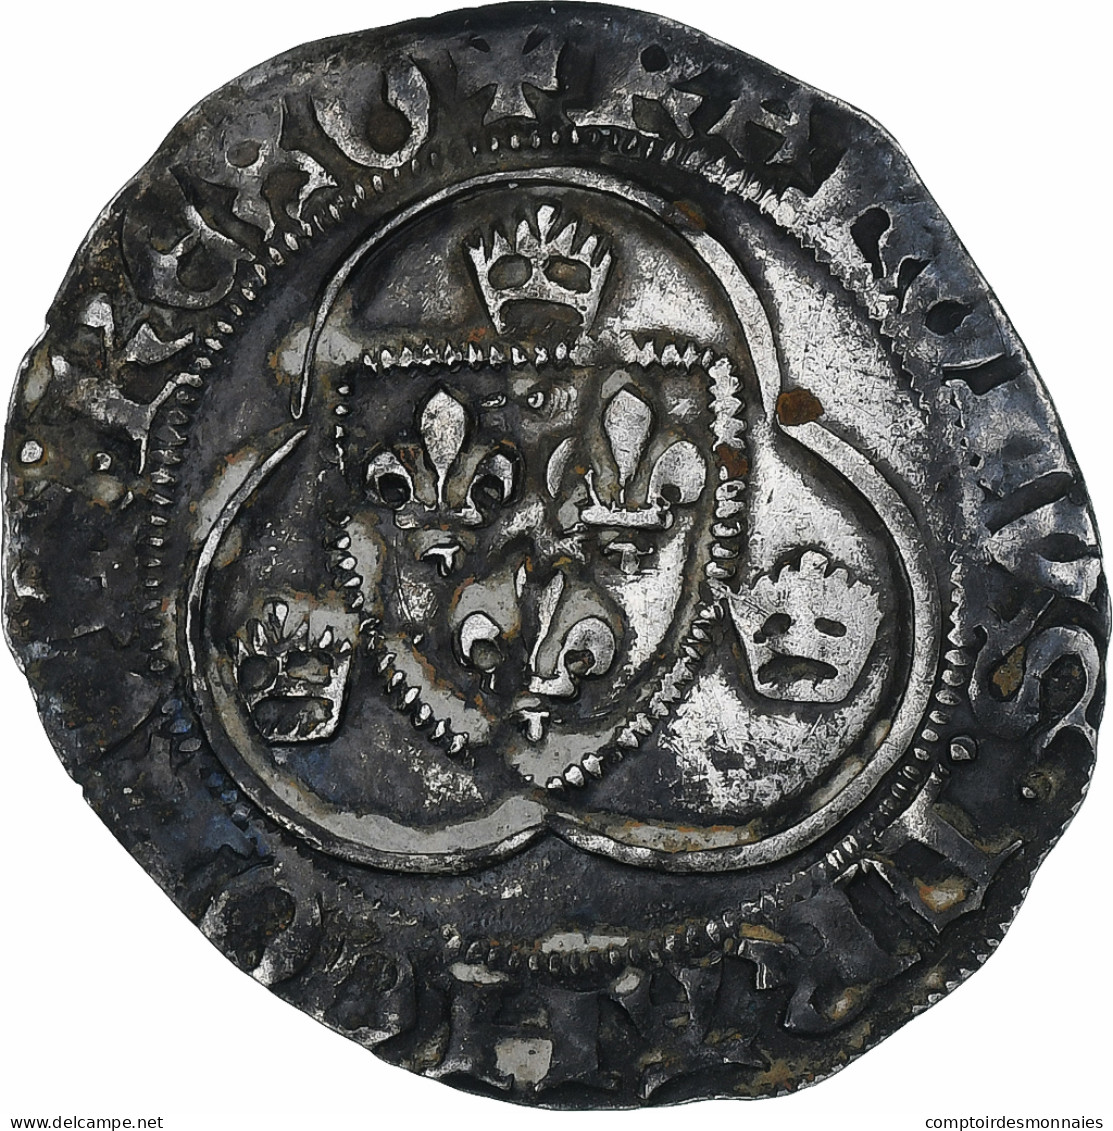 France, Charles VII, Blanc à La Couronne, 1436-1461, Orléans, Billon, TTB - 1422-1461 Charles VII Le Victorieux